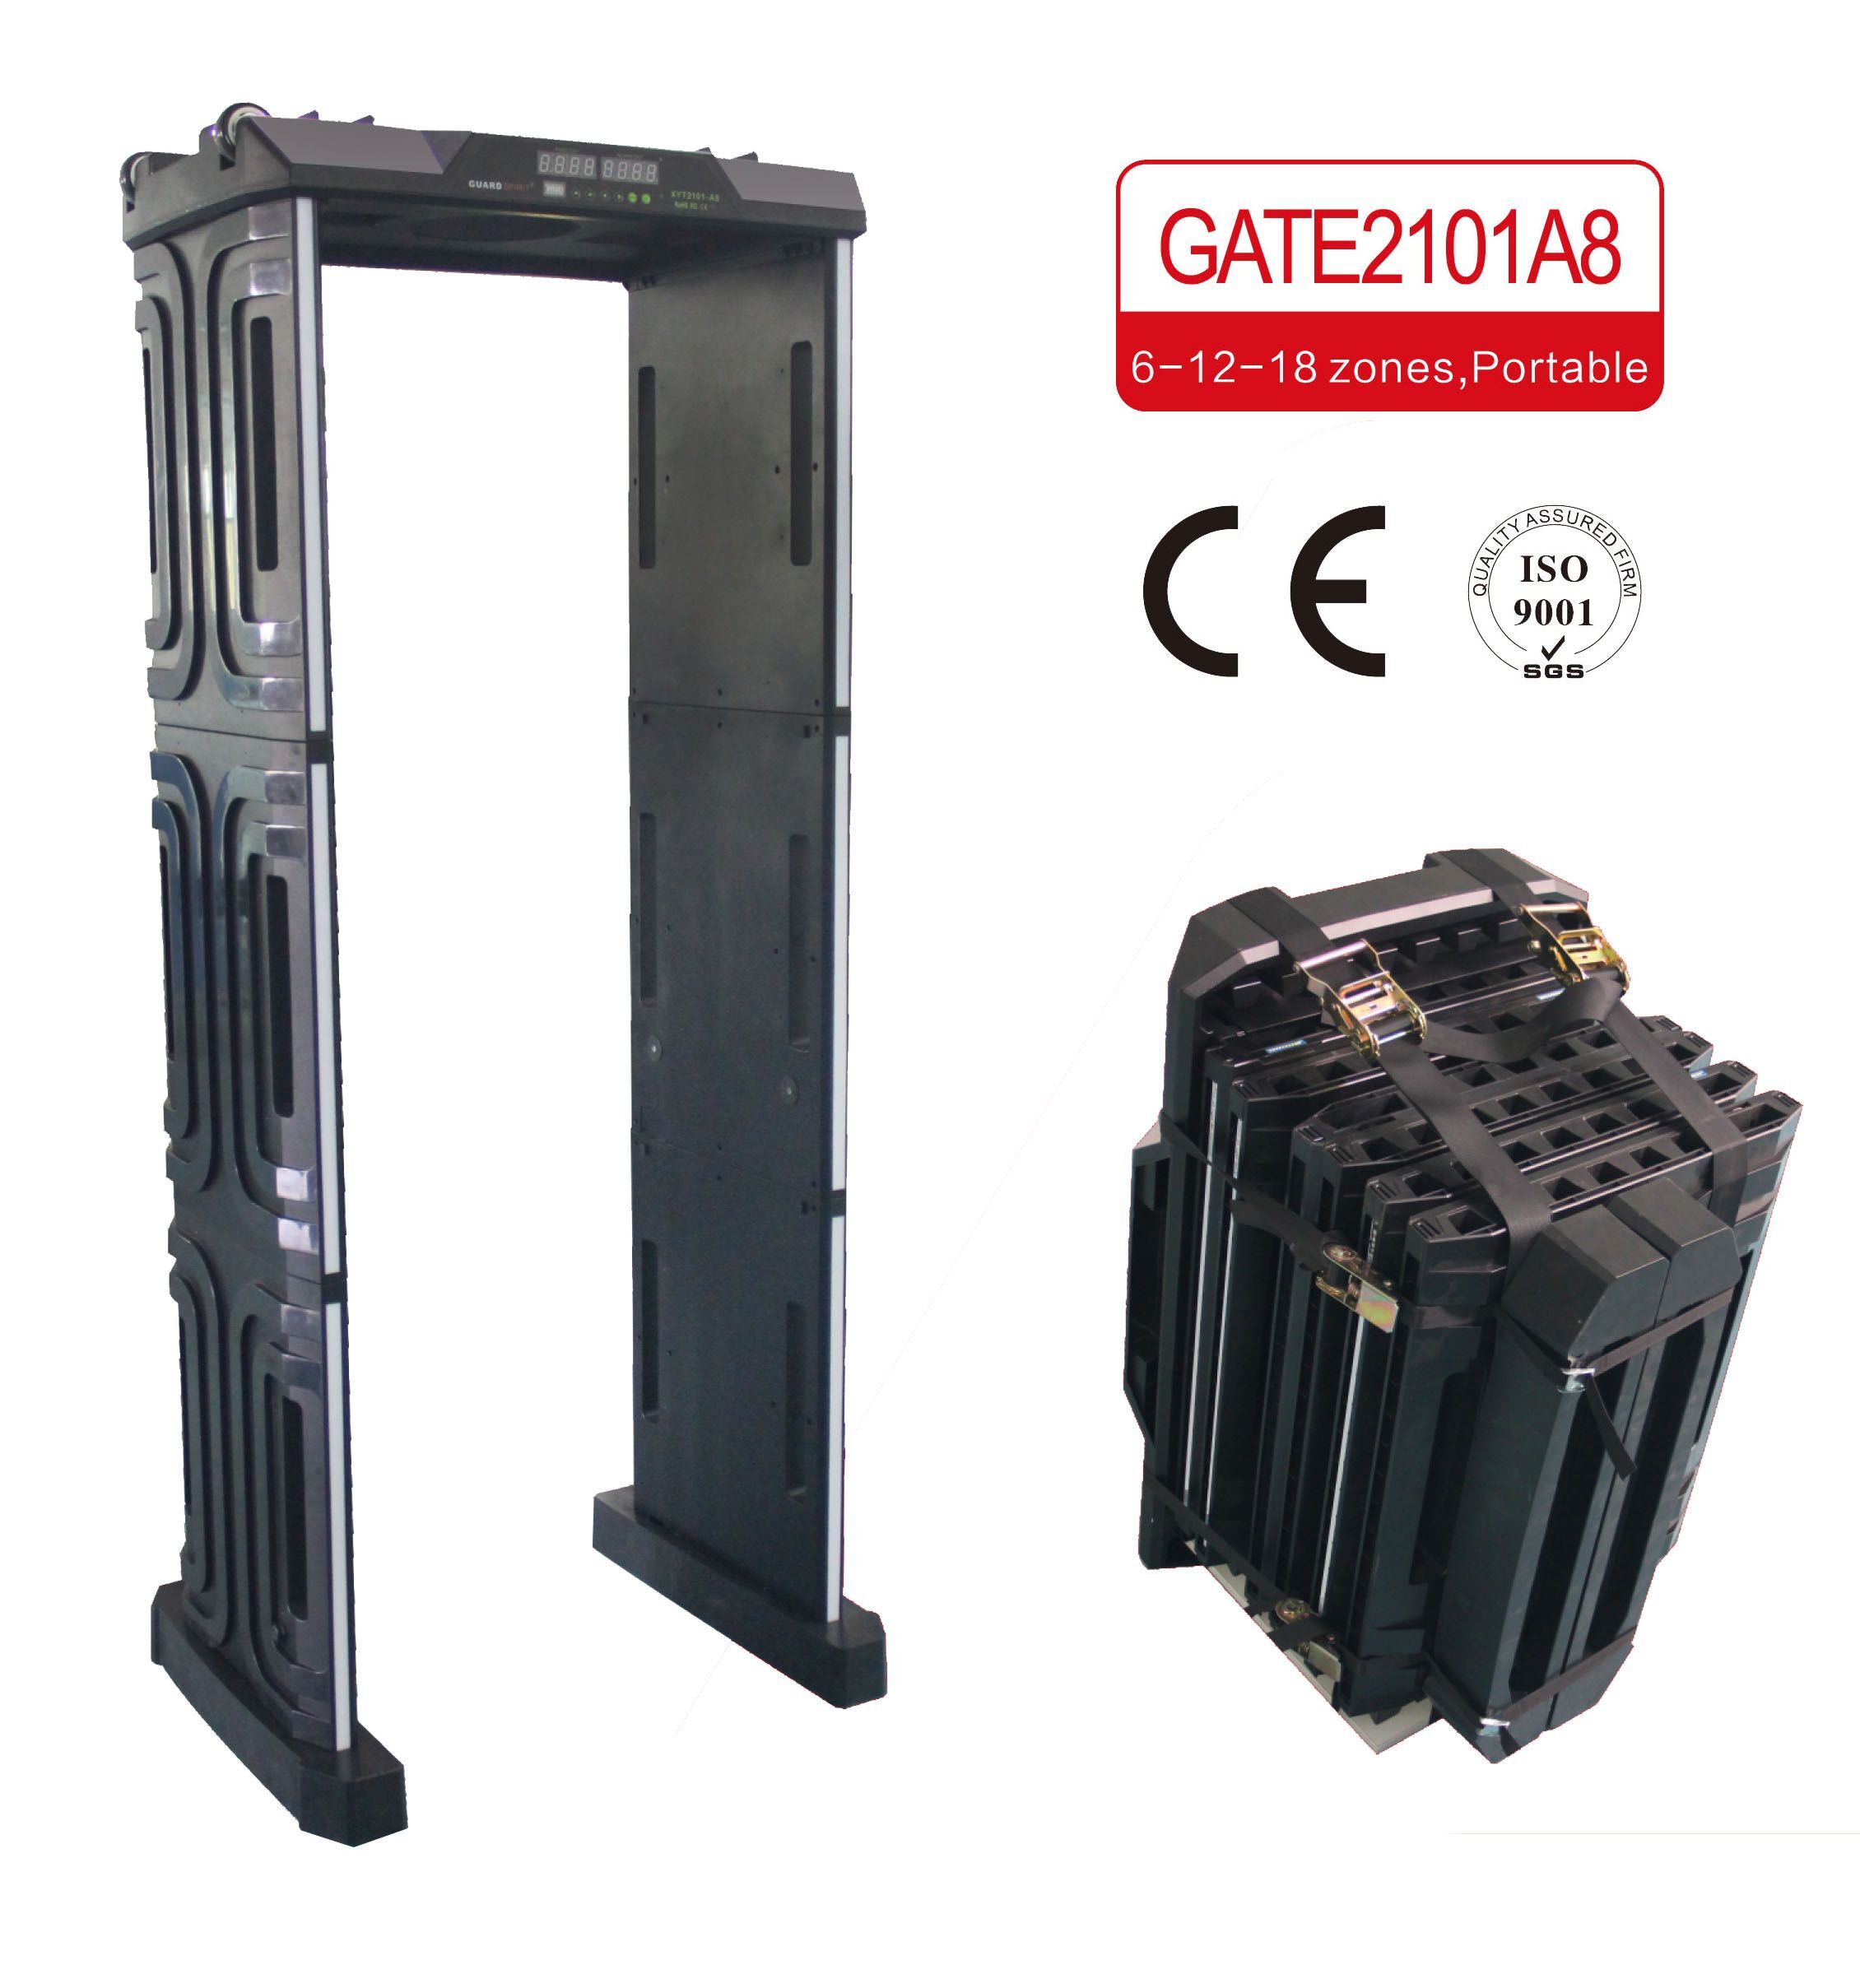 GATE2101A8